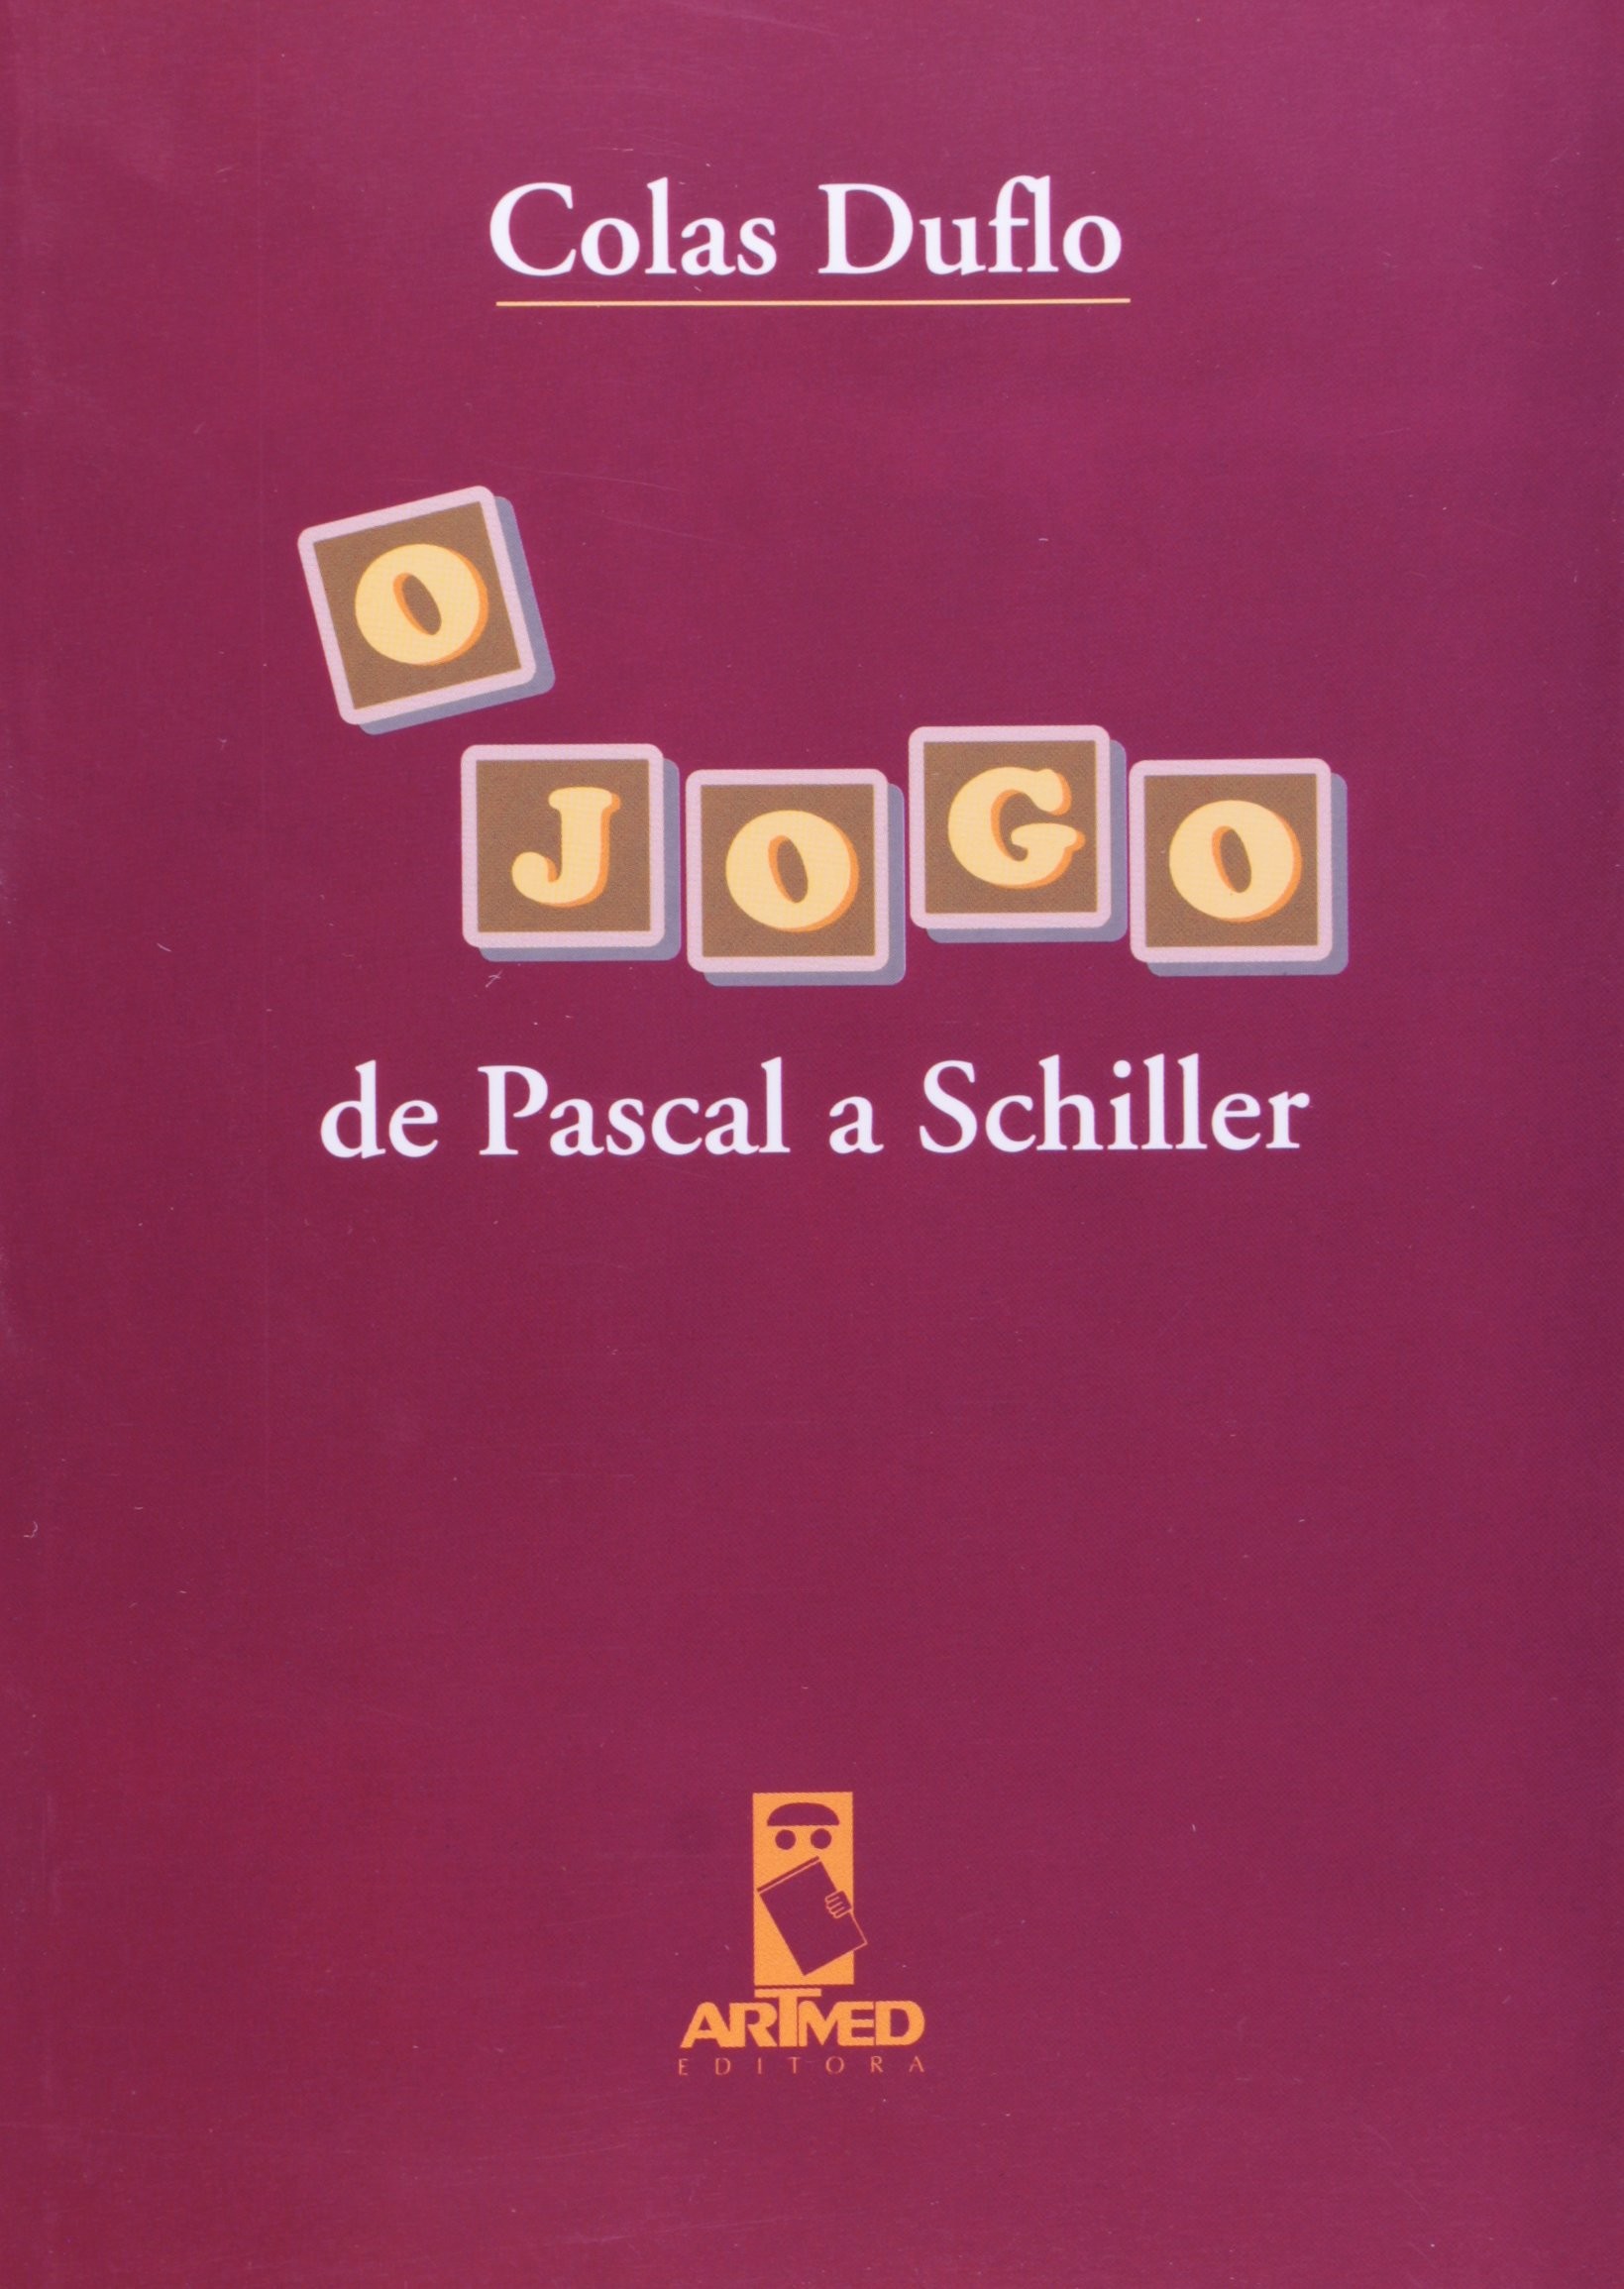 Jogo de Pascal a Schiller